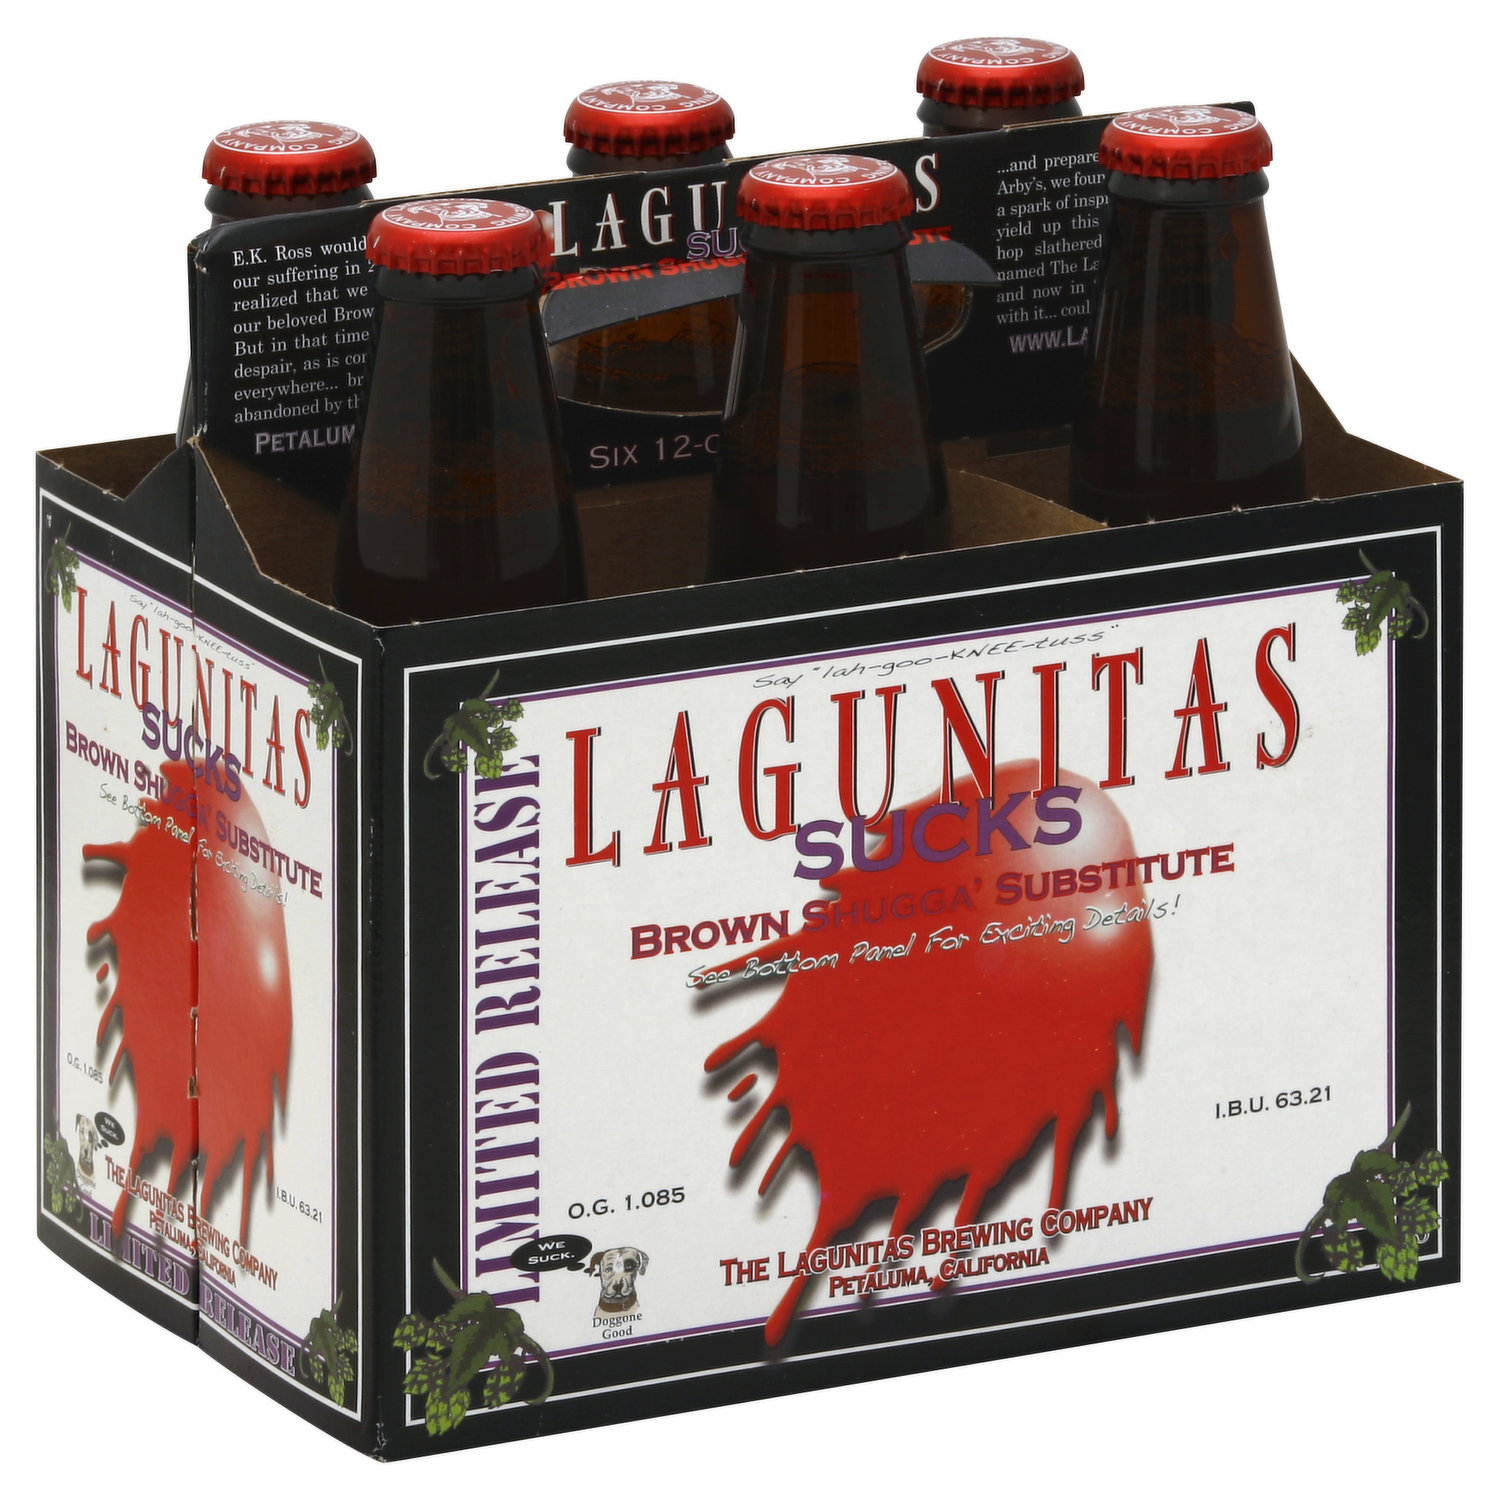 Lagunitas Ale, Brown Shugga' Substitute, Sucks, Limited Release, 6 Each